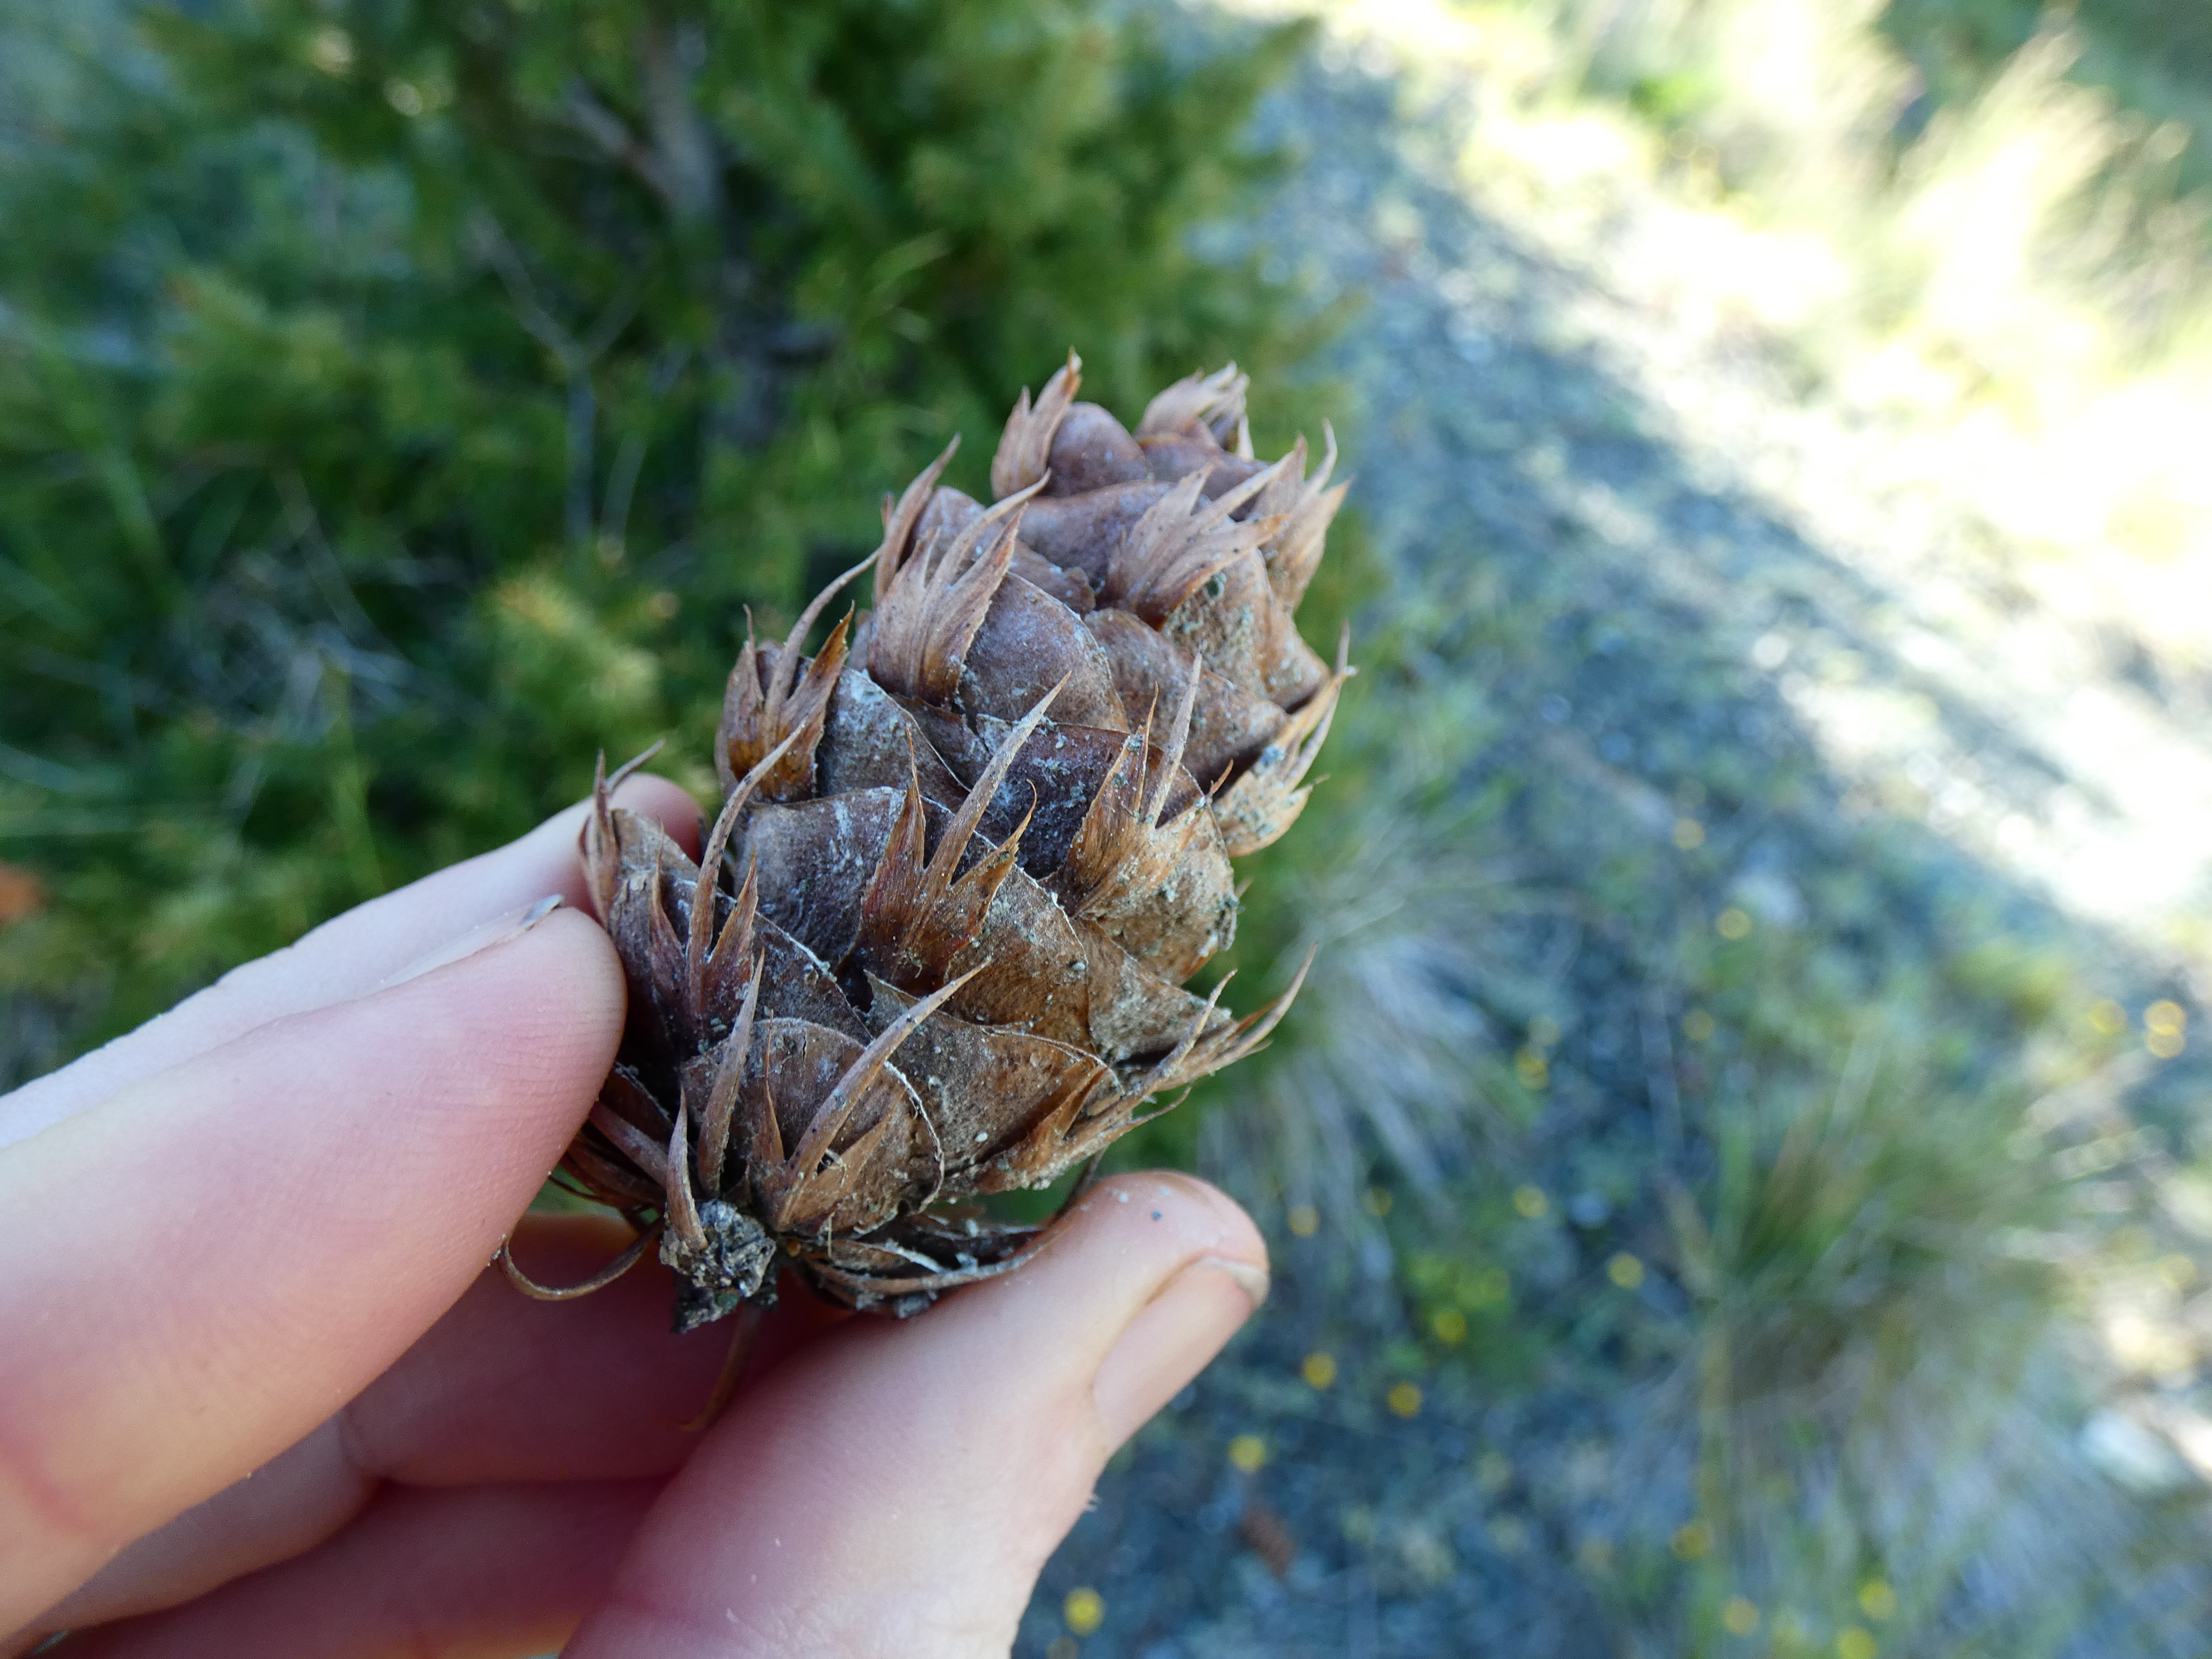 A Douglas-fir seed cone